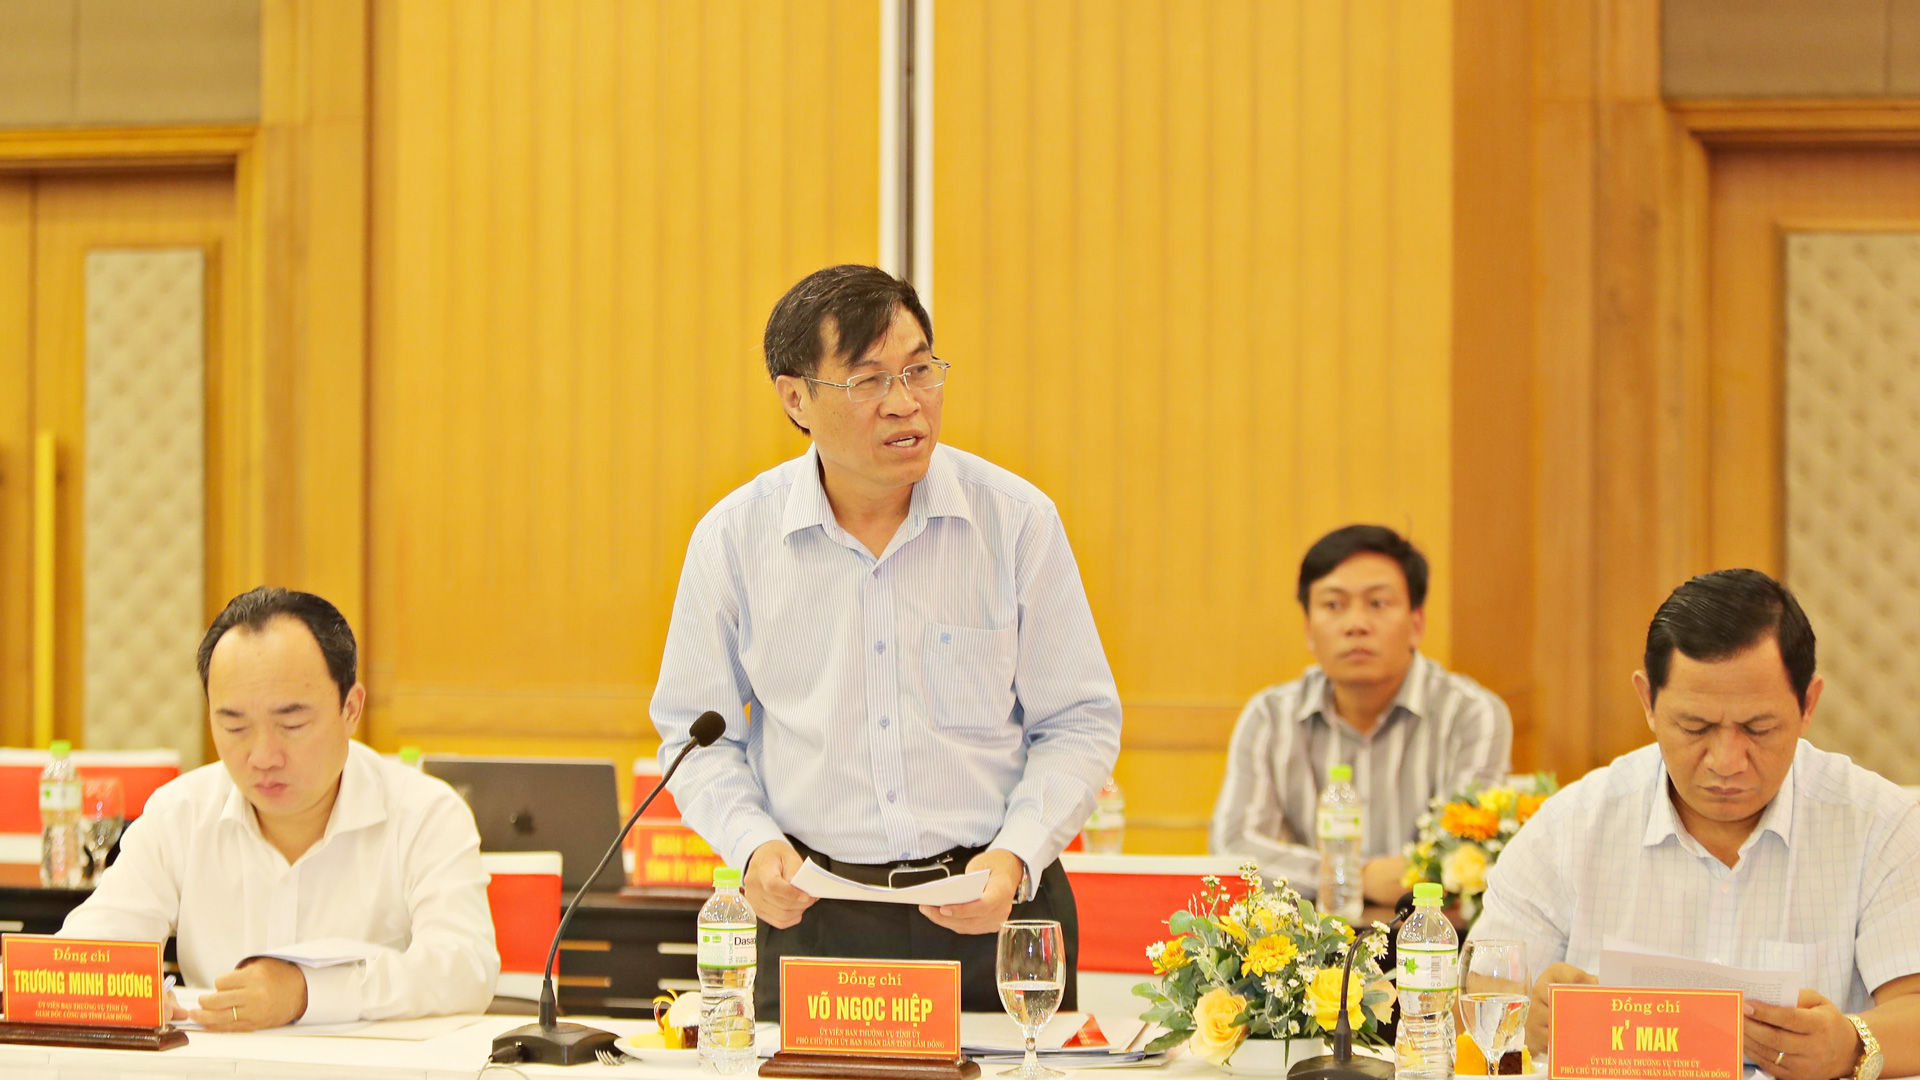 Đồng chí Võ Ngọc Hiệp -  Ủy viên Ban Thường vụ Tỉnh ủy, Phó Chủ tịch UBND tỉnh Lâm Đồng báo cáo tình hình hợp tác giữa hai địa phương thời gian qua